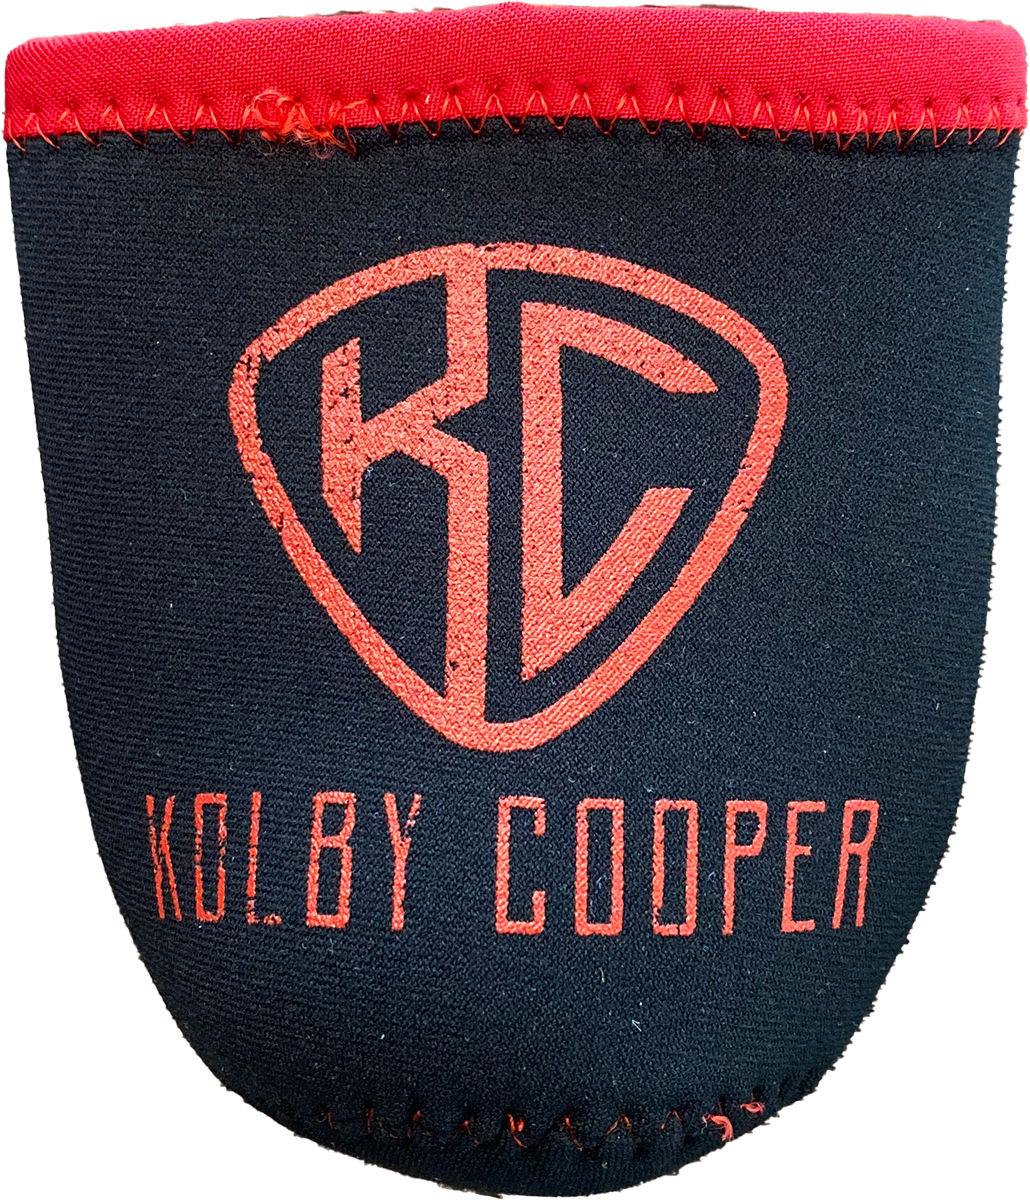 http://kolby-cooper-merch.myshopify.com/cdn/shop/products/KCRed_Blk_1200x1200.png?v=1624200121